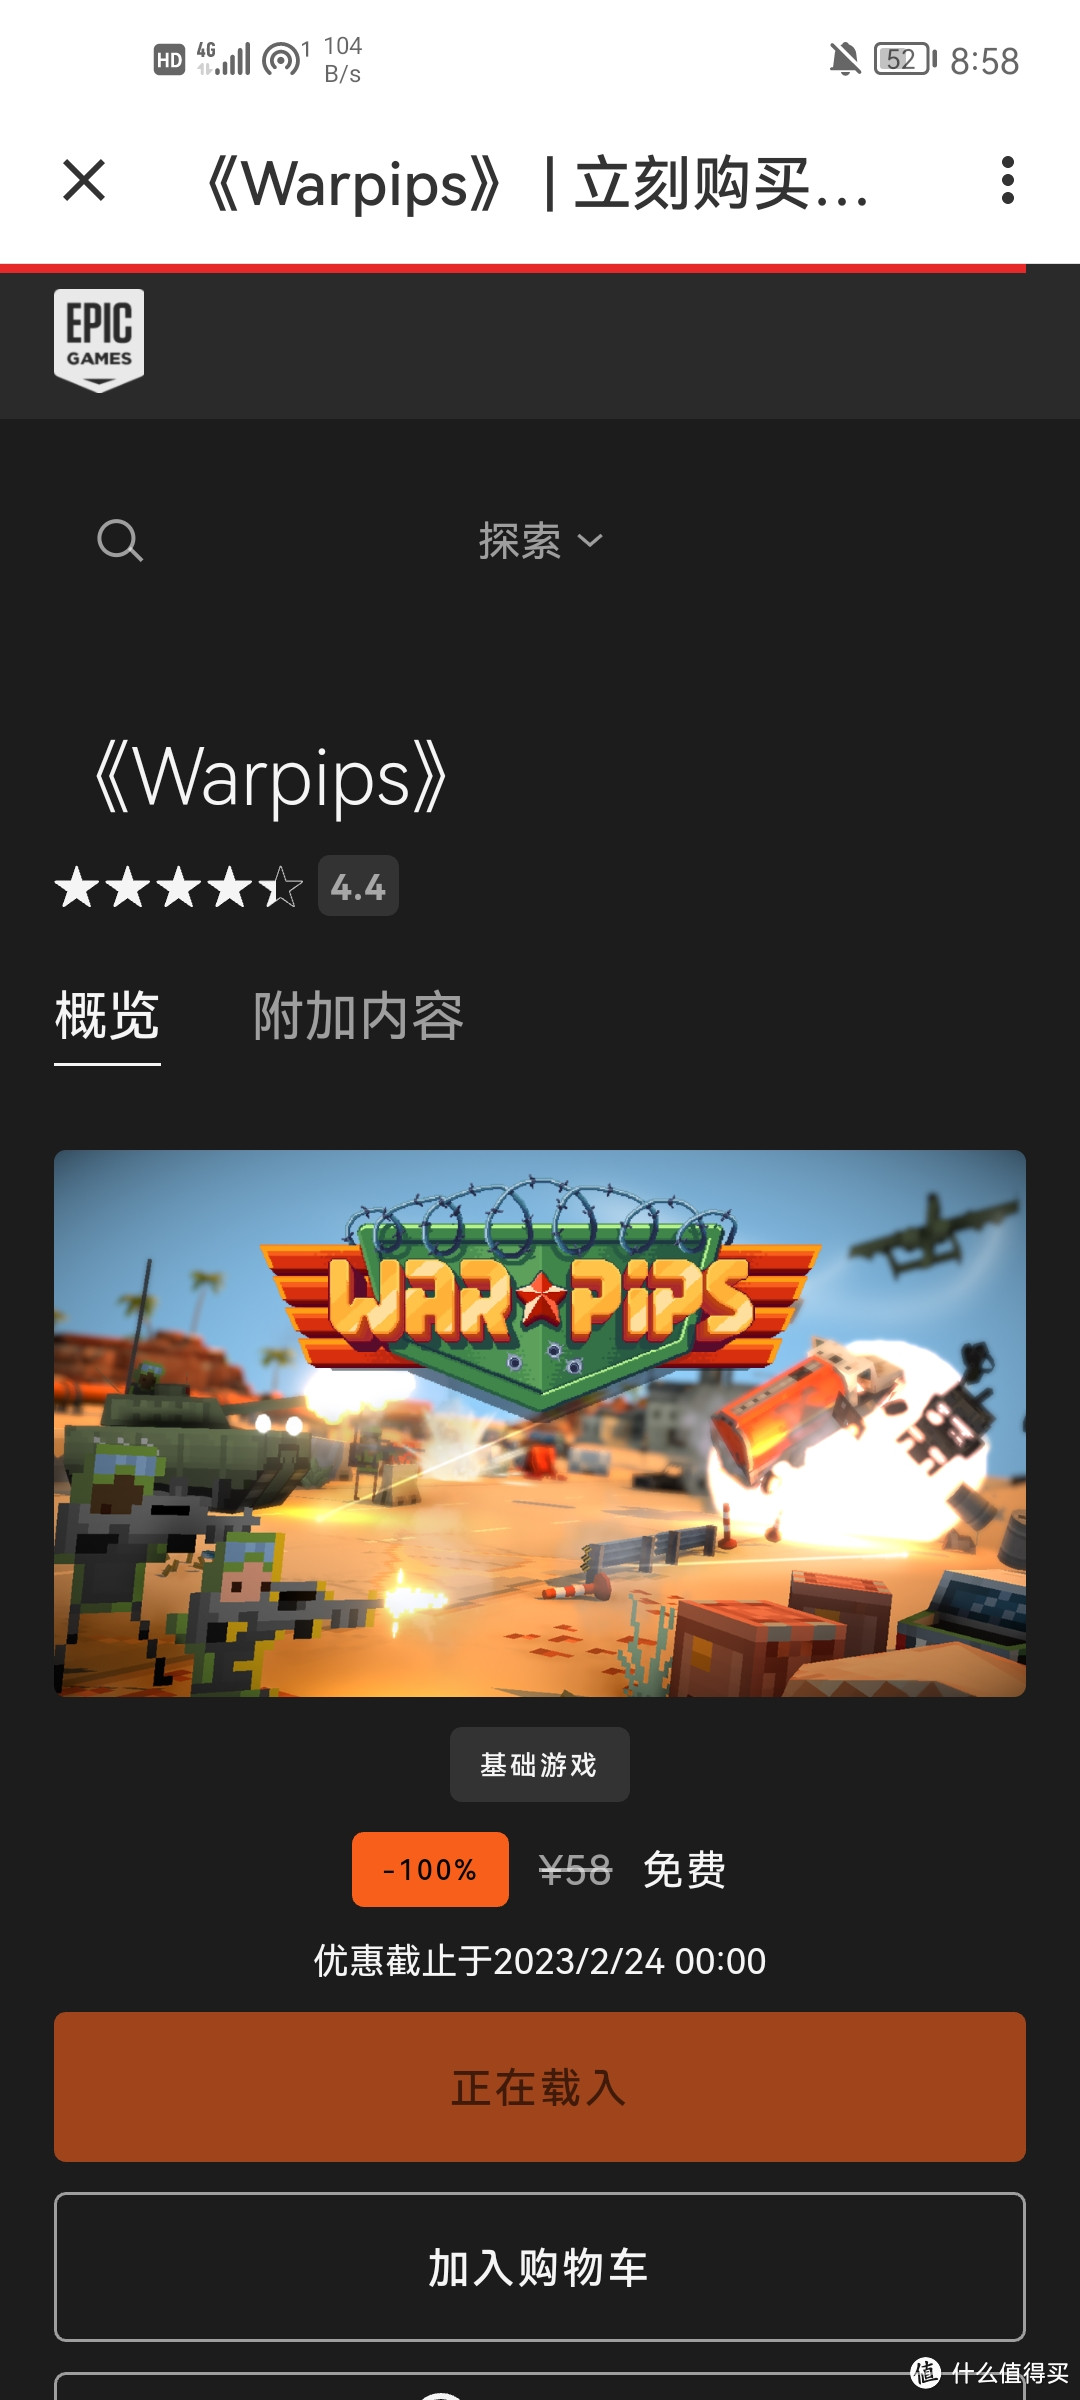 E宝喜+1！现在就可以免费领取一款价值58元的游戏《Warpips》！